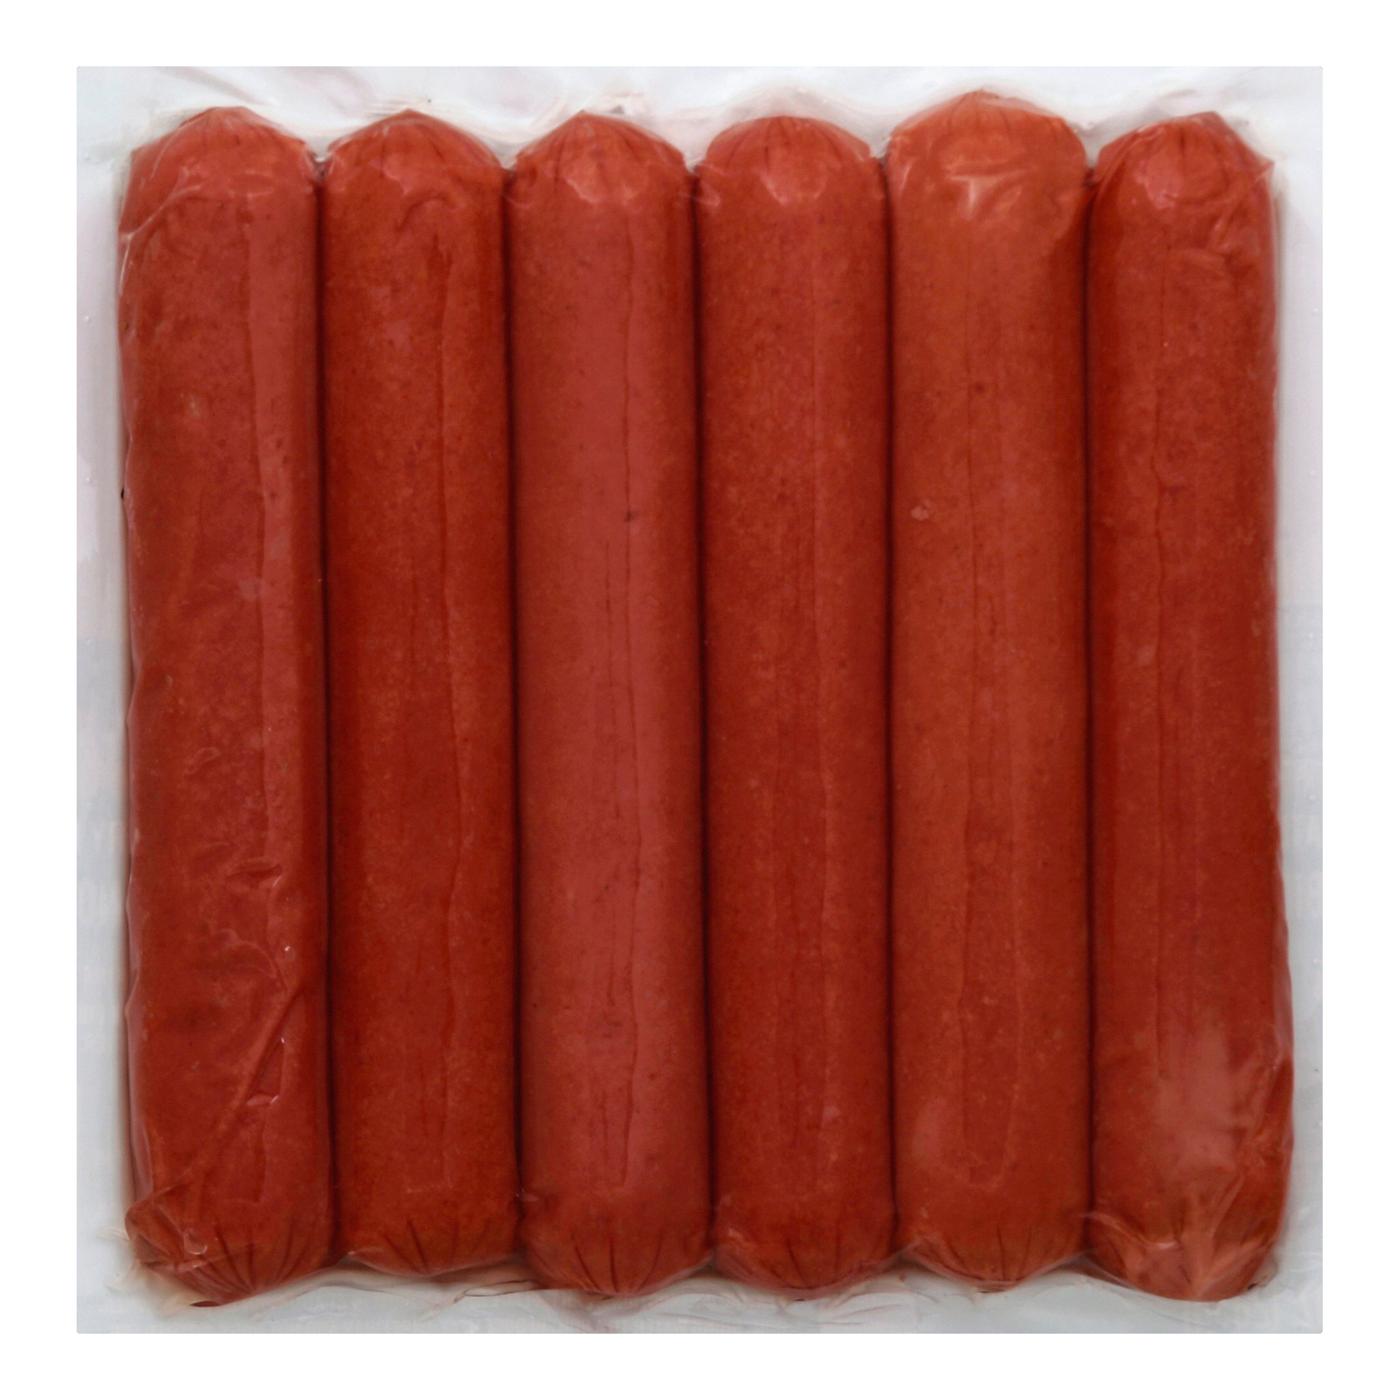 Applegate Naturals Uncured Beef Hot Dog; image 3 of 5